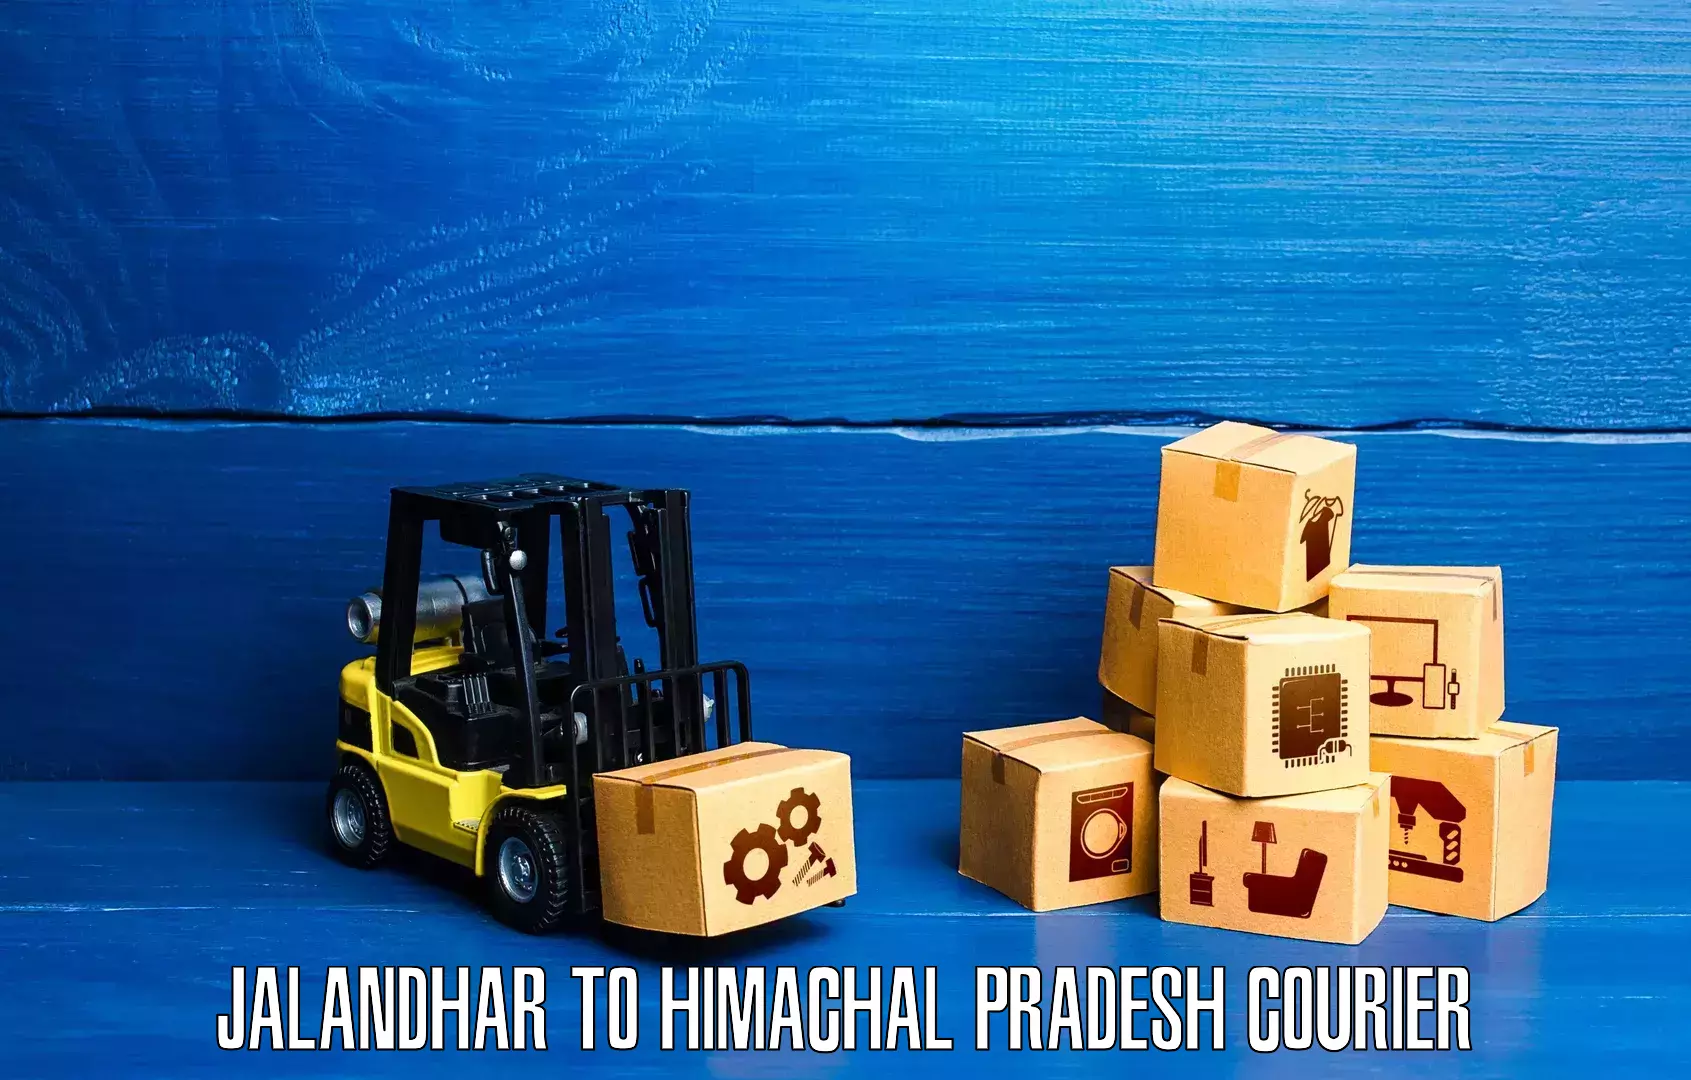 Global shipping networks Jalandhar to Nerwa